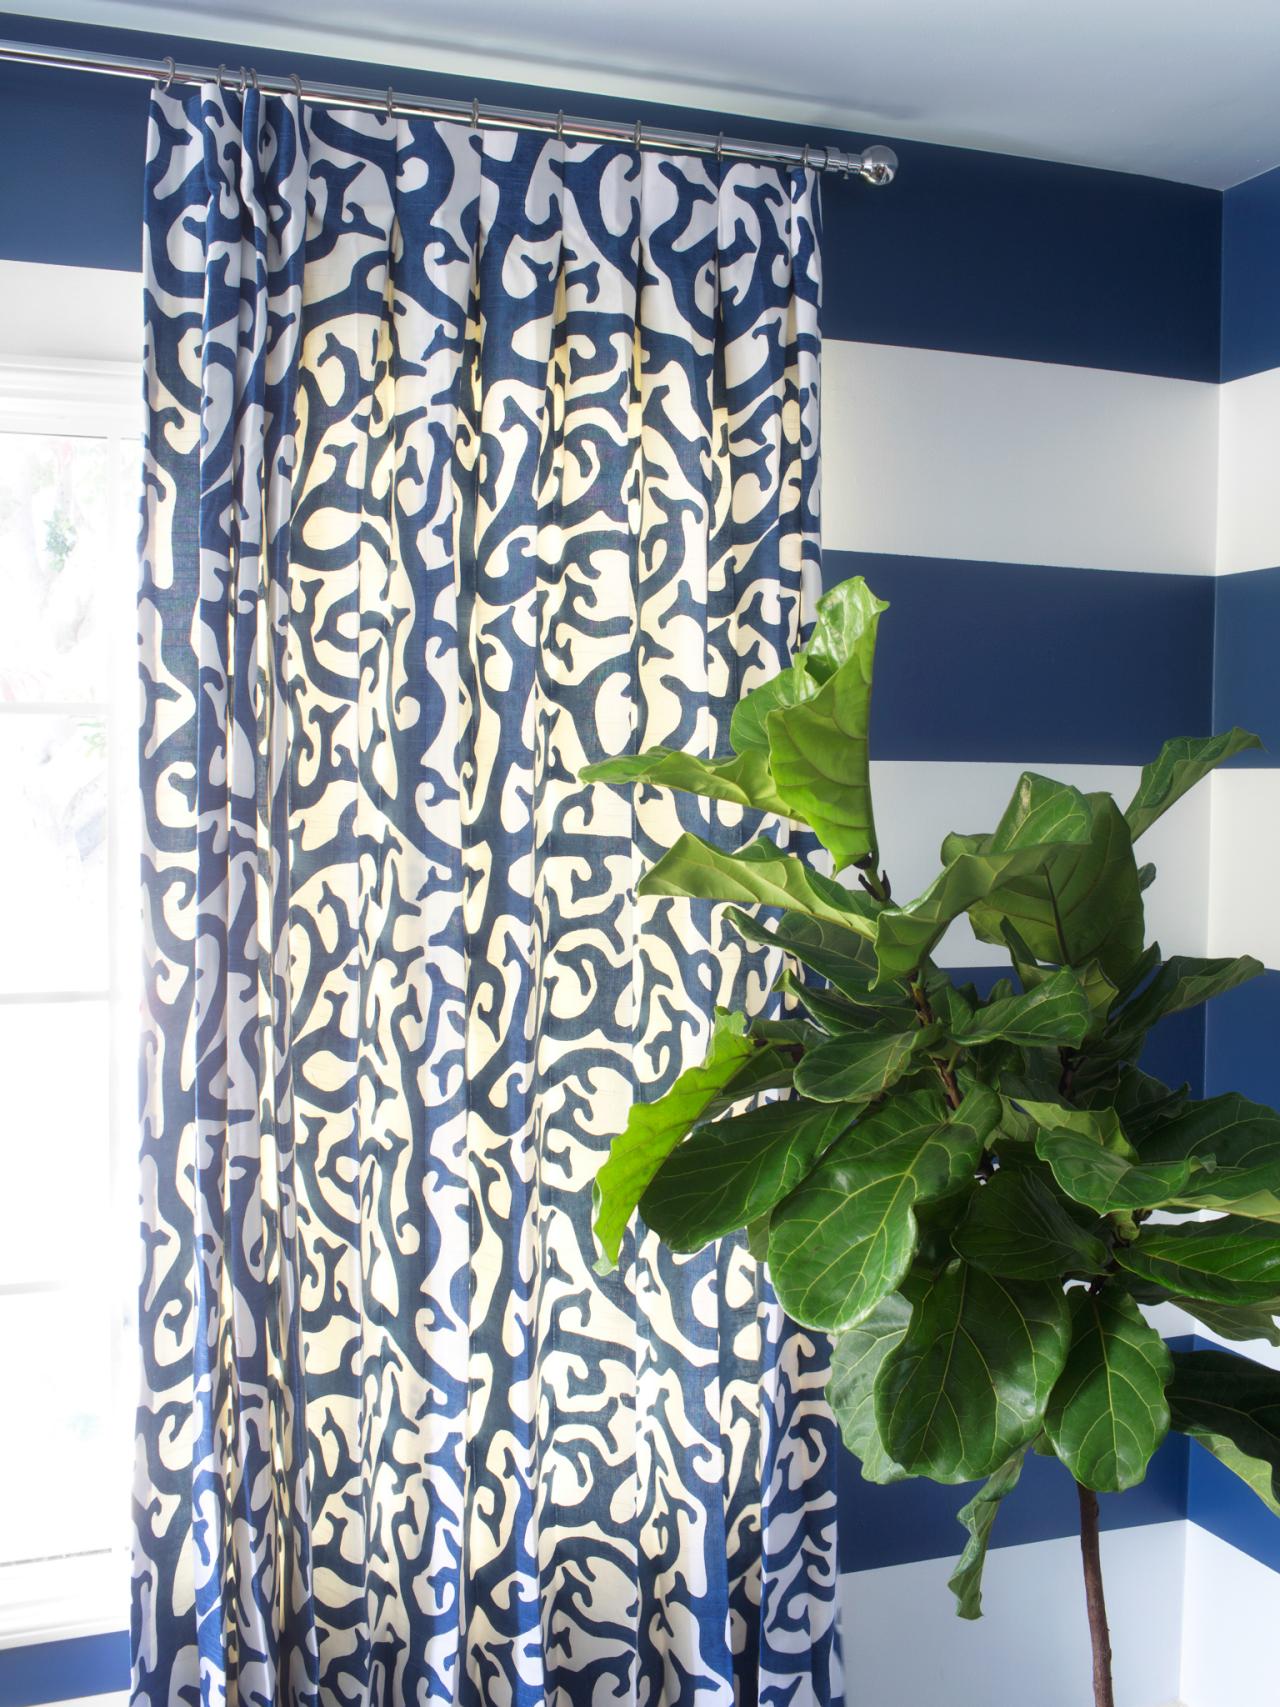 déco idée chambre adolescent rideau design moderne plante verte bleu